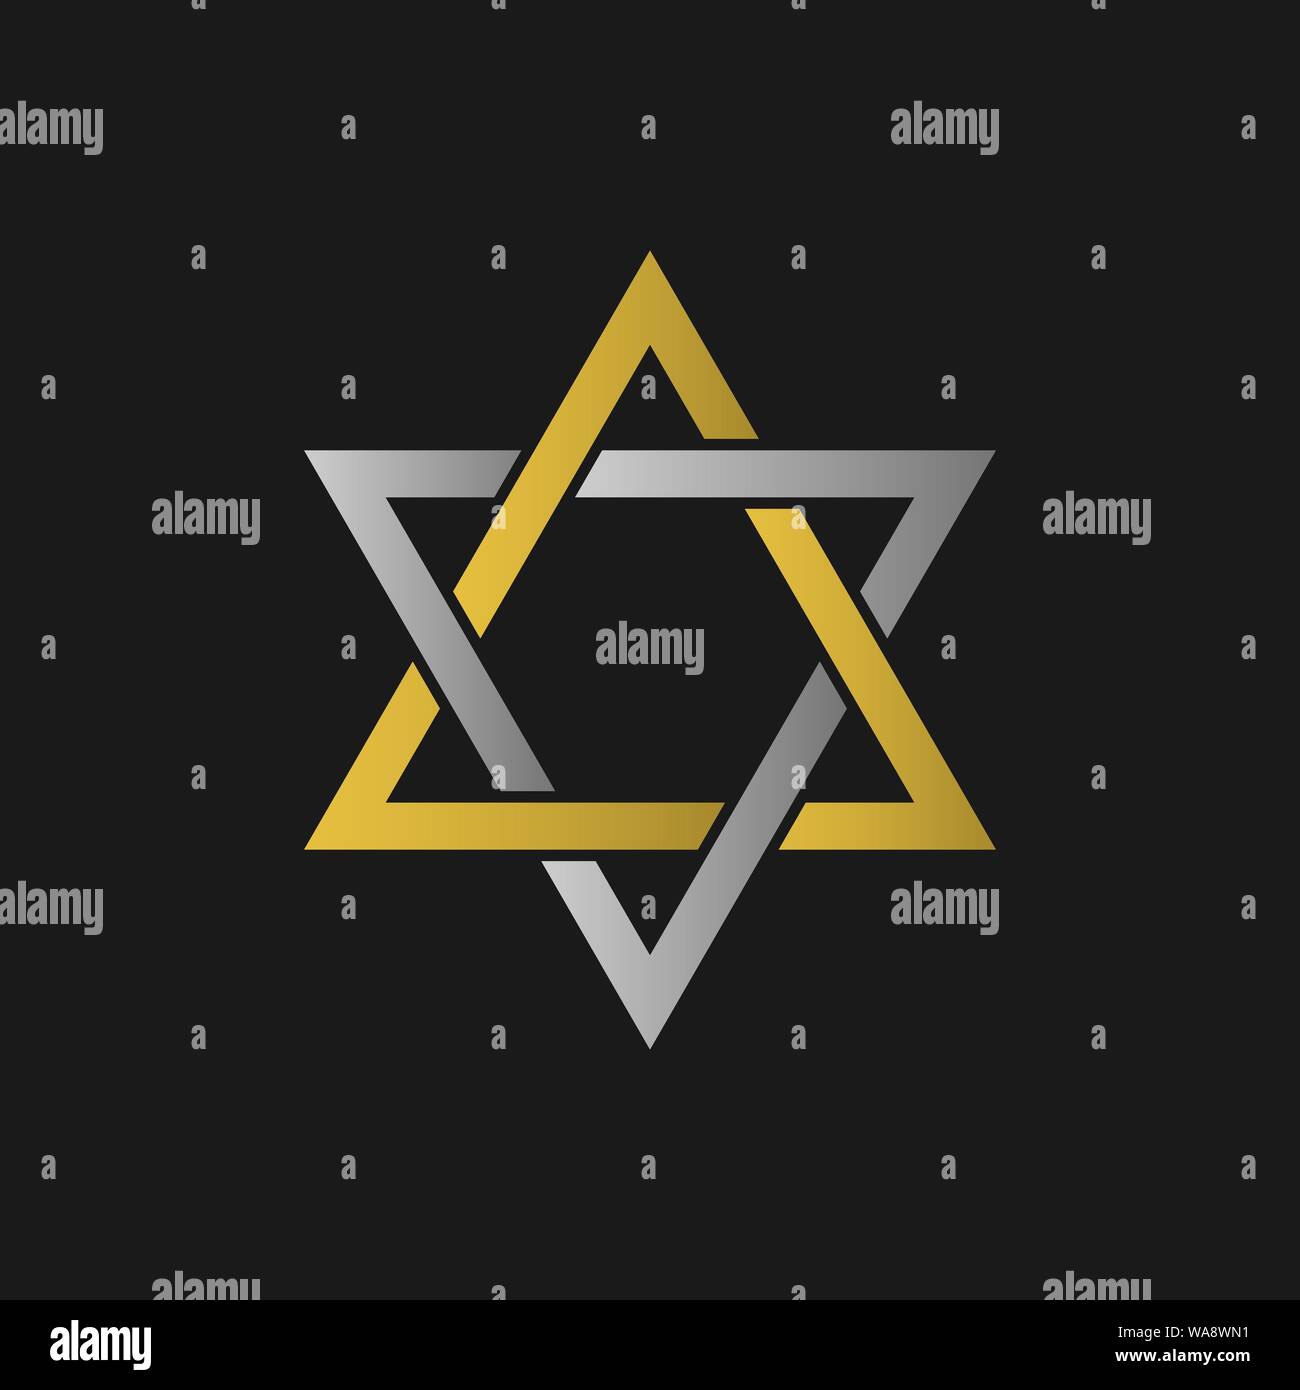 Goldene Davidstern Symbol. Allgemein anerkannten Symbol des modernen jüdischen Identität und Judentum, Israel Symbol Stock Vektor